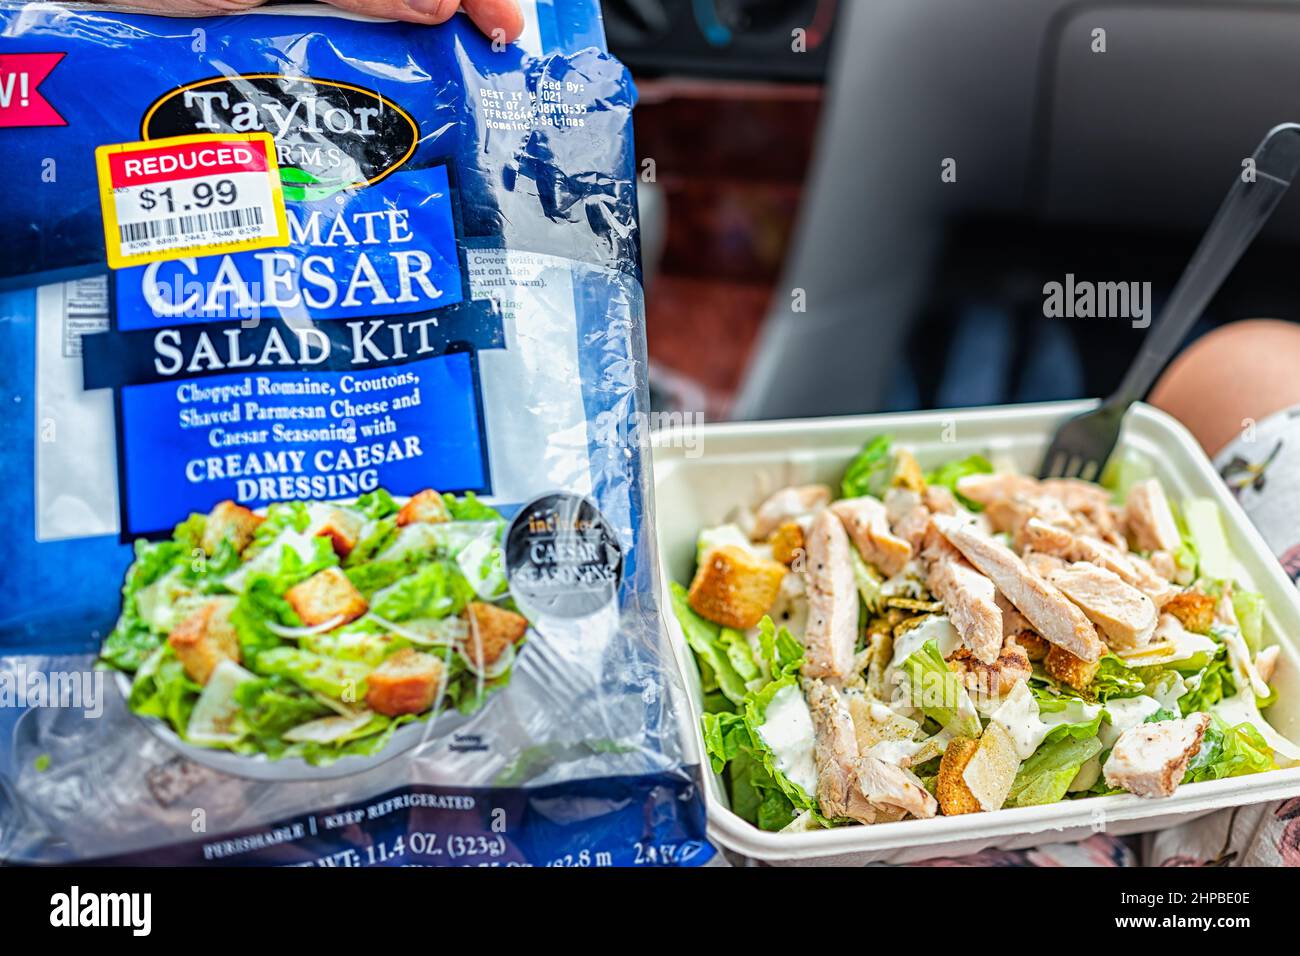 Atene, USA - 5 ottobre 2021: Lattuga Caesar romaine e polli alla griglia con etichetta con il cartello della confezione per il kit di insalate Taylor Farms a prezzo ridotto Foto Stock